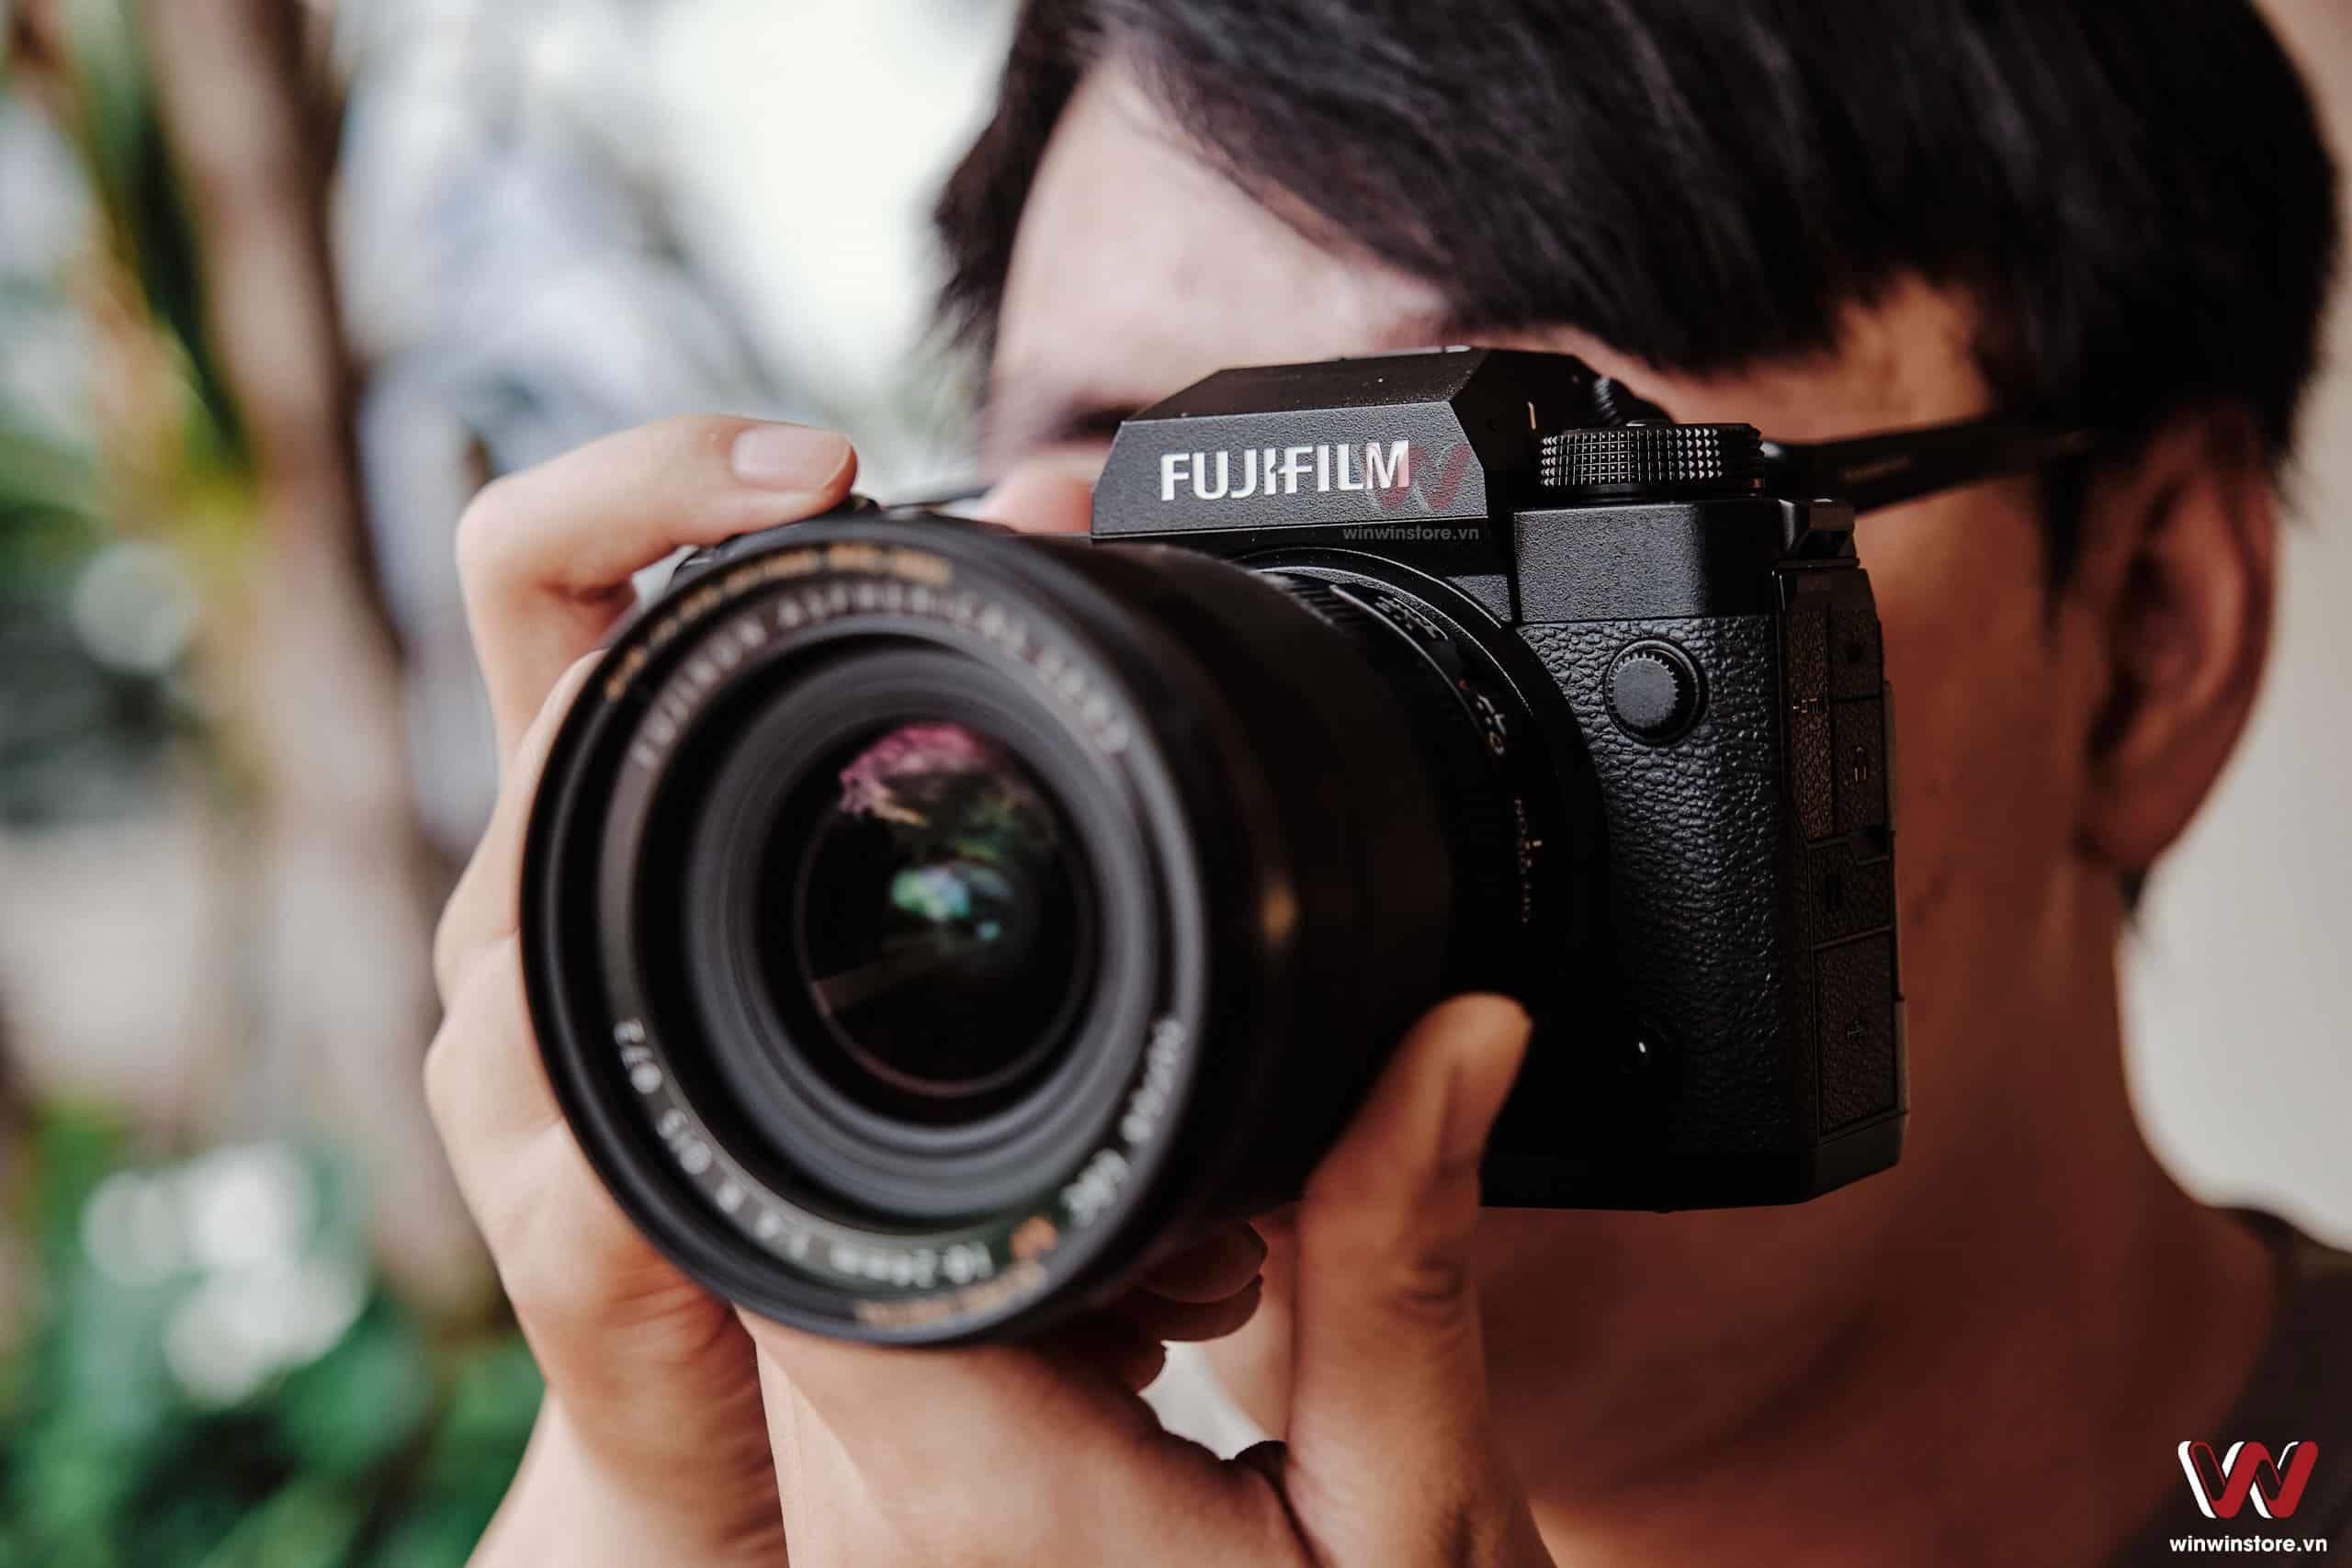 Khuyến mãi tháng 2 giảm giá loạt máy ảnh và ống kính Fujifilm tại WinWinStore